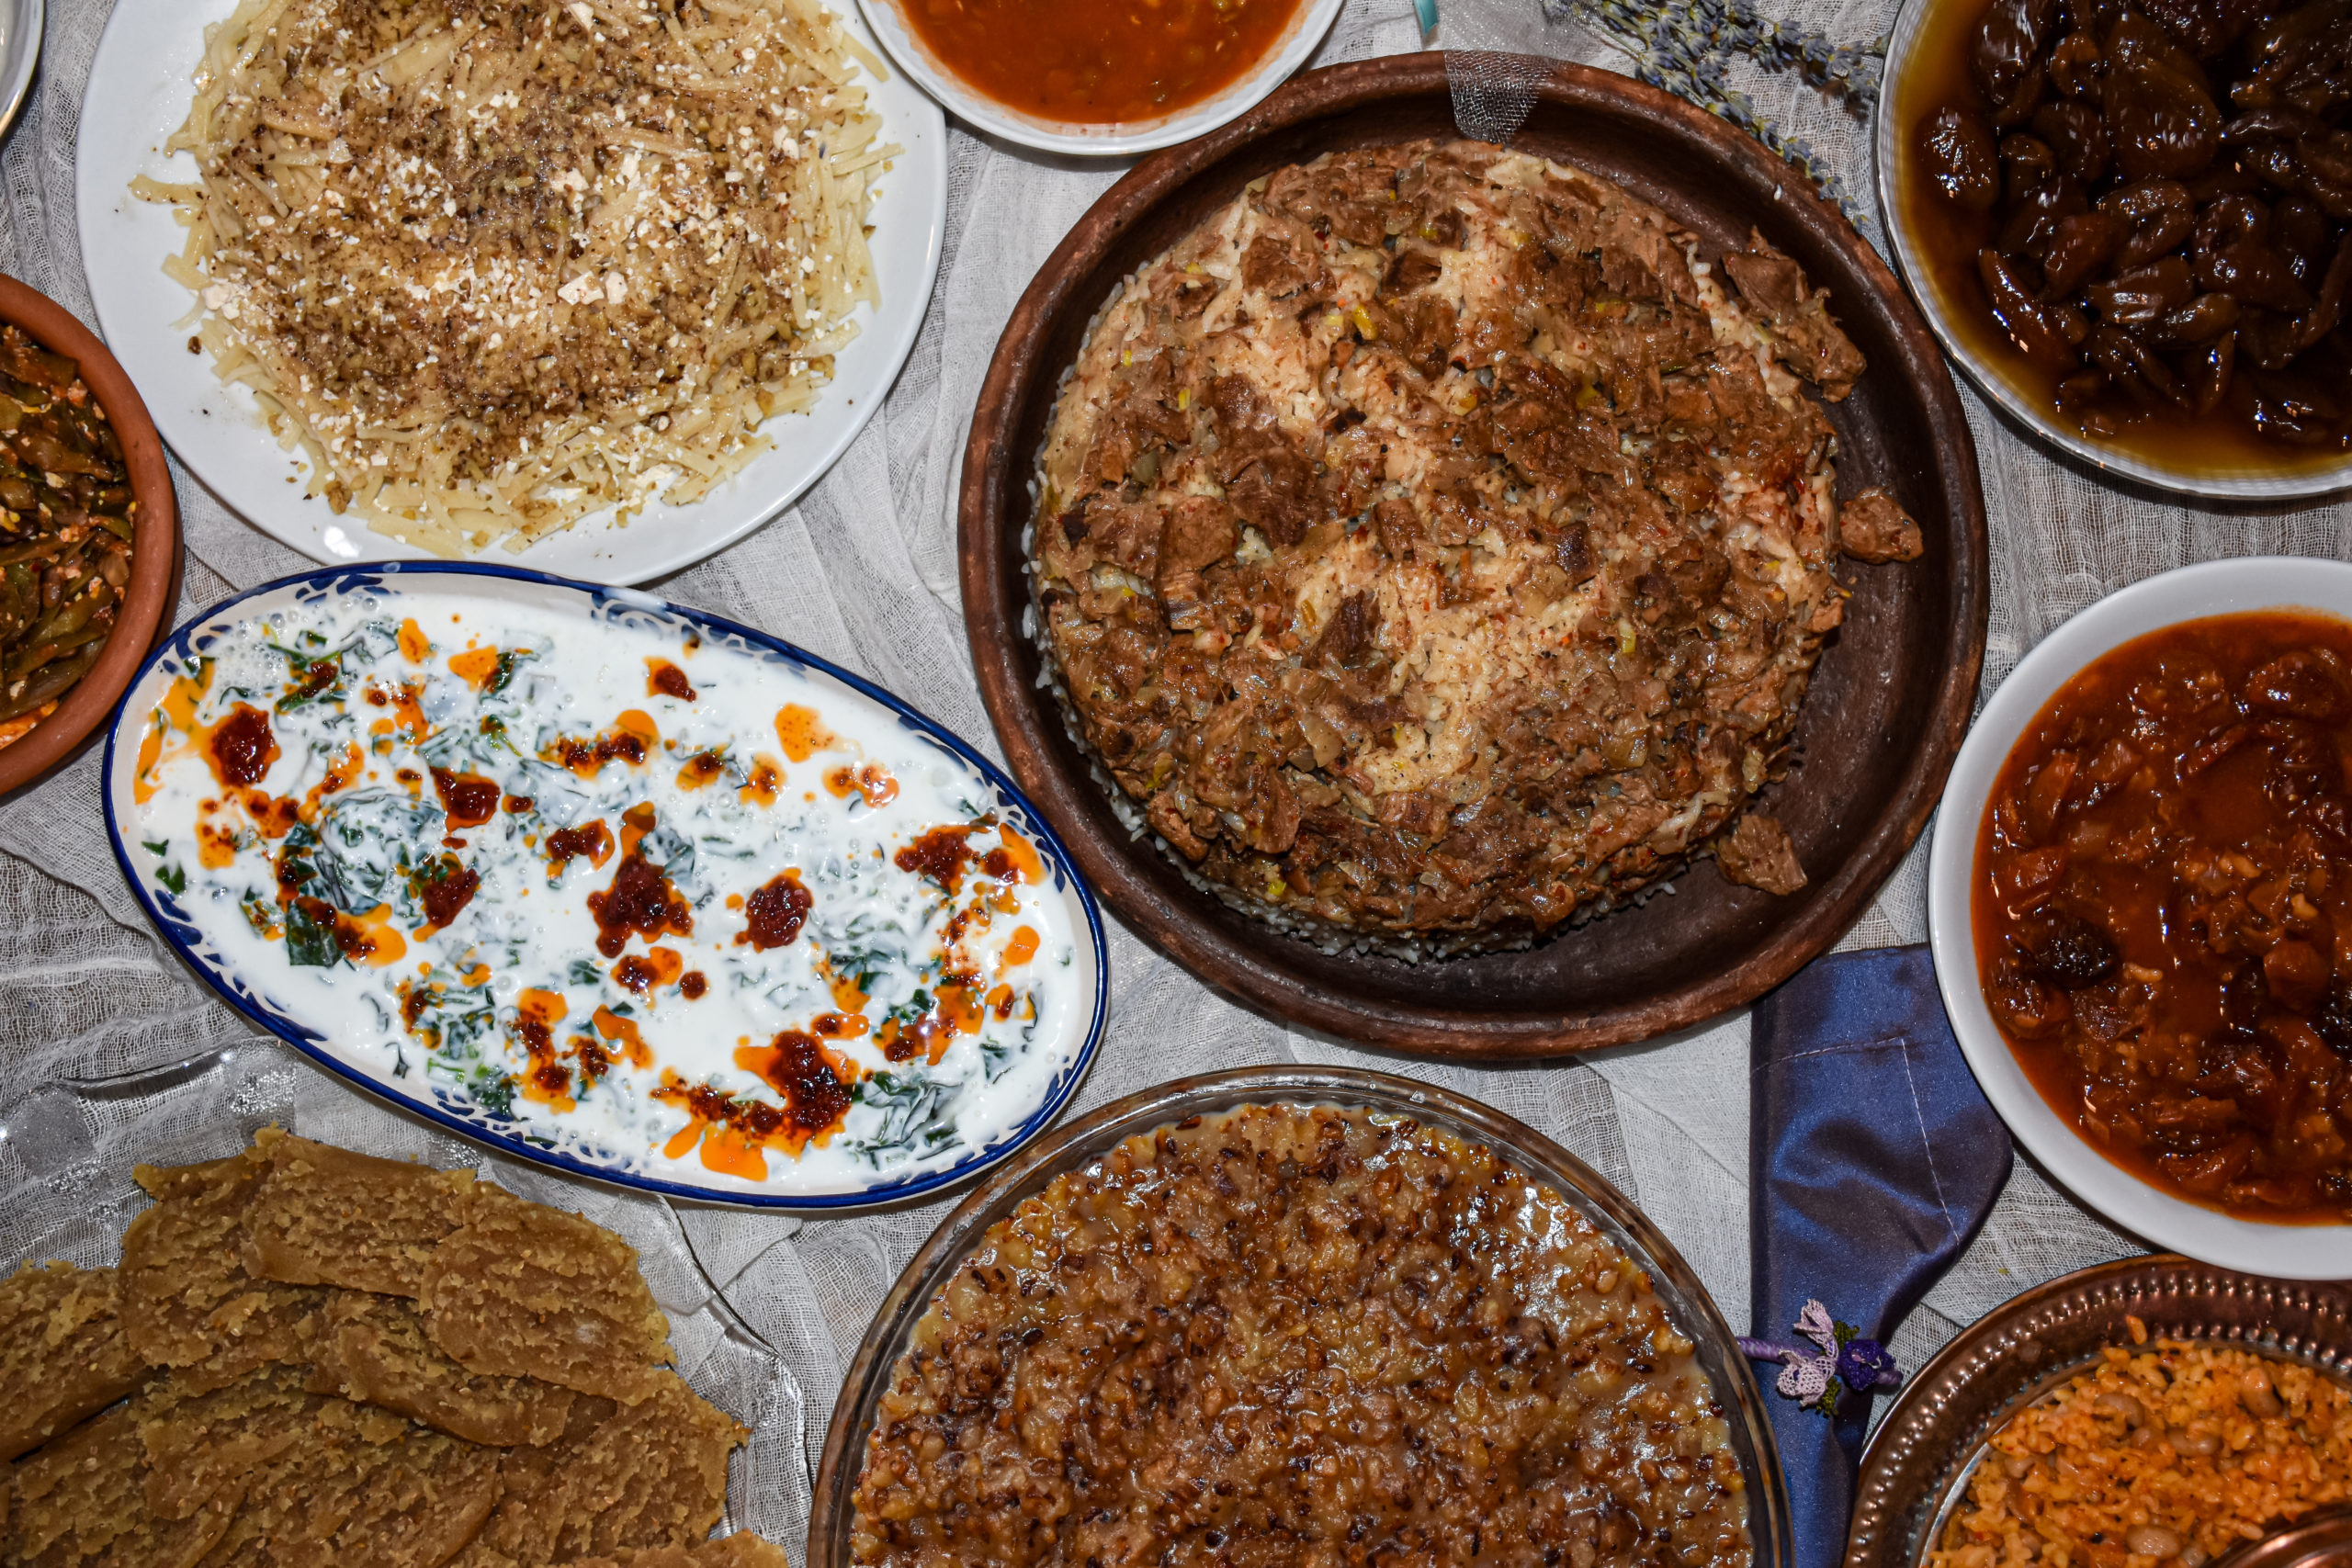  Nallıhan’ın Kültürel Lezzetleri Halk Mutfağına Giriyor